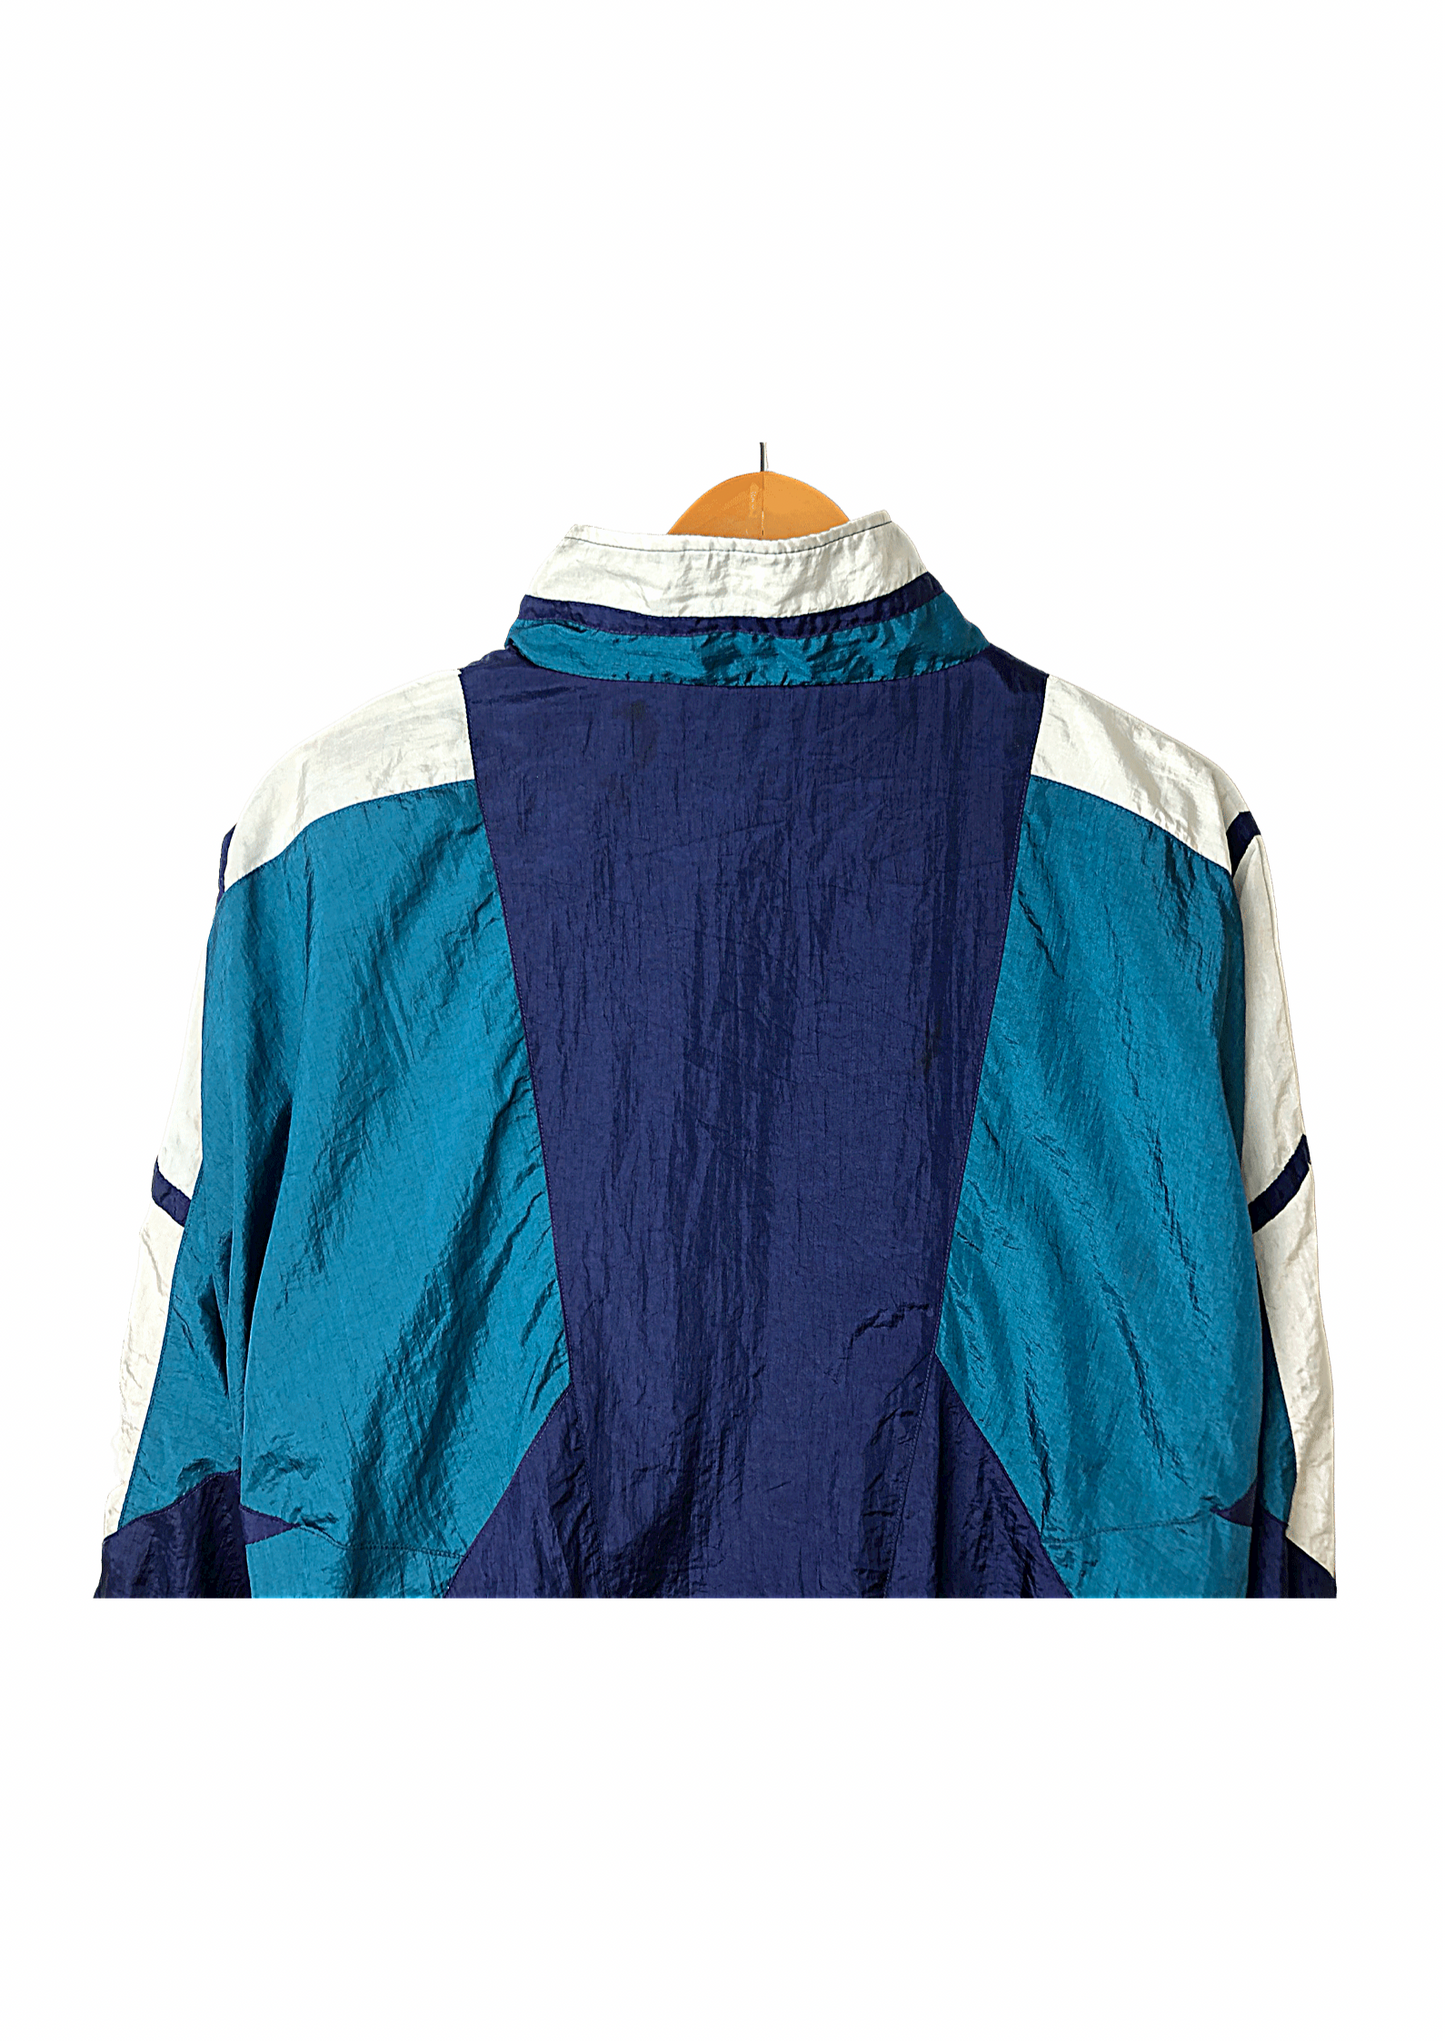 80’s Activewear Teal & Blue Colorblock 2 Piece Windbreaker Tracksuit